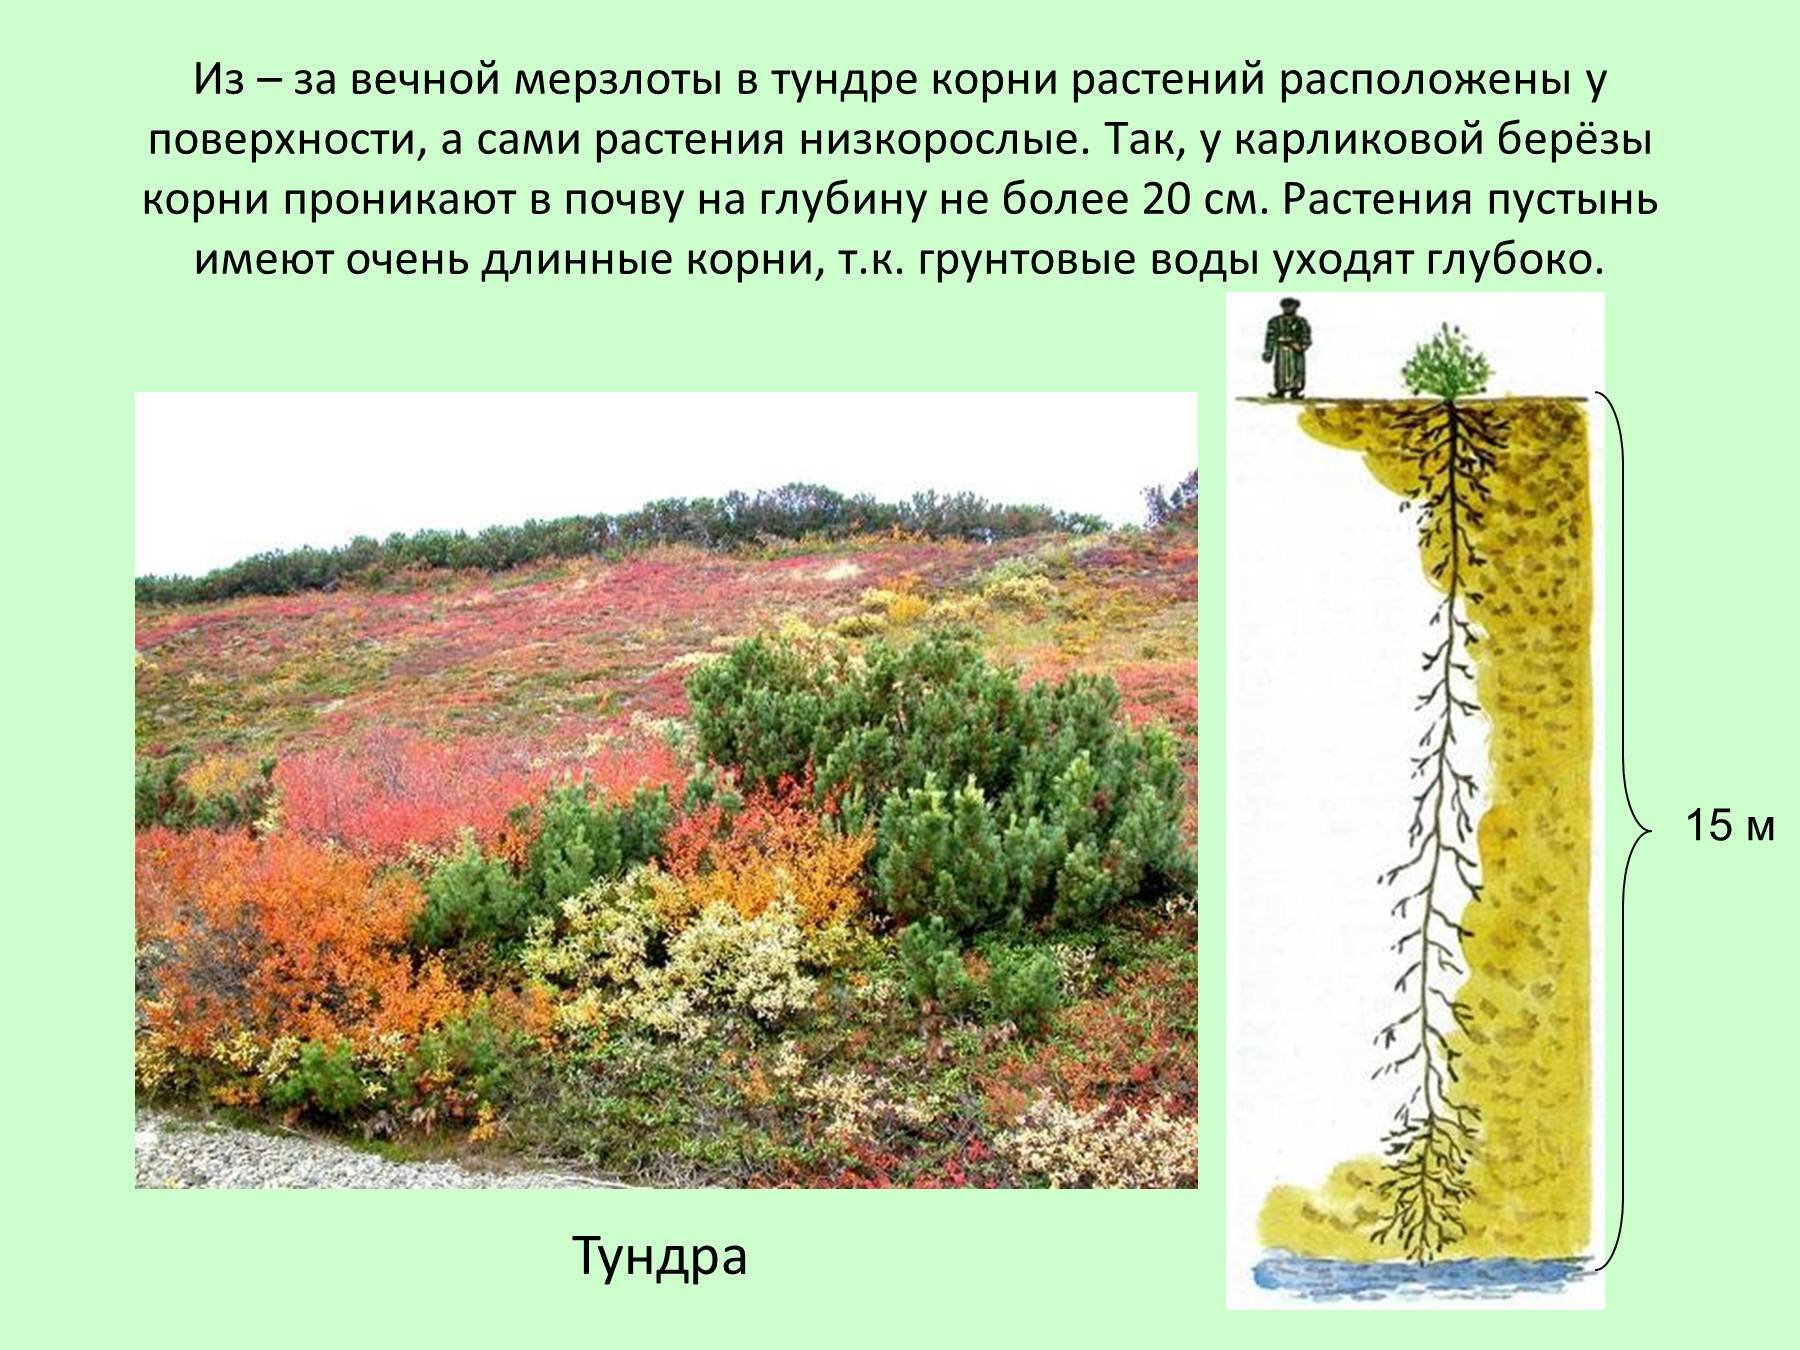 Примеры растений в тундре